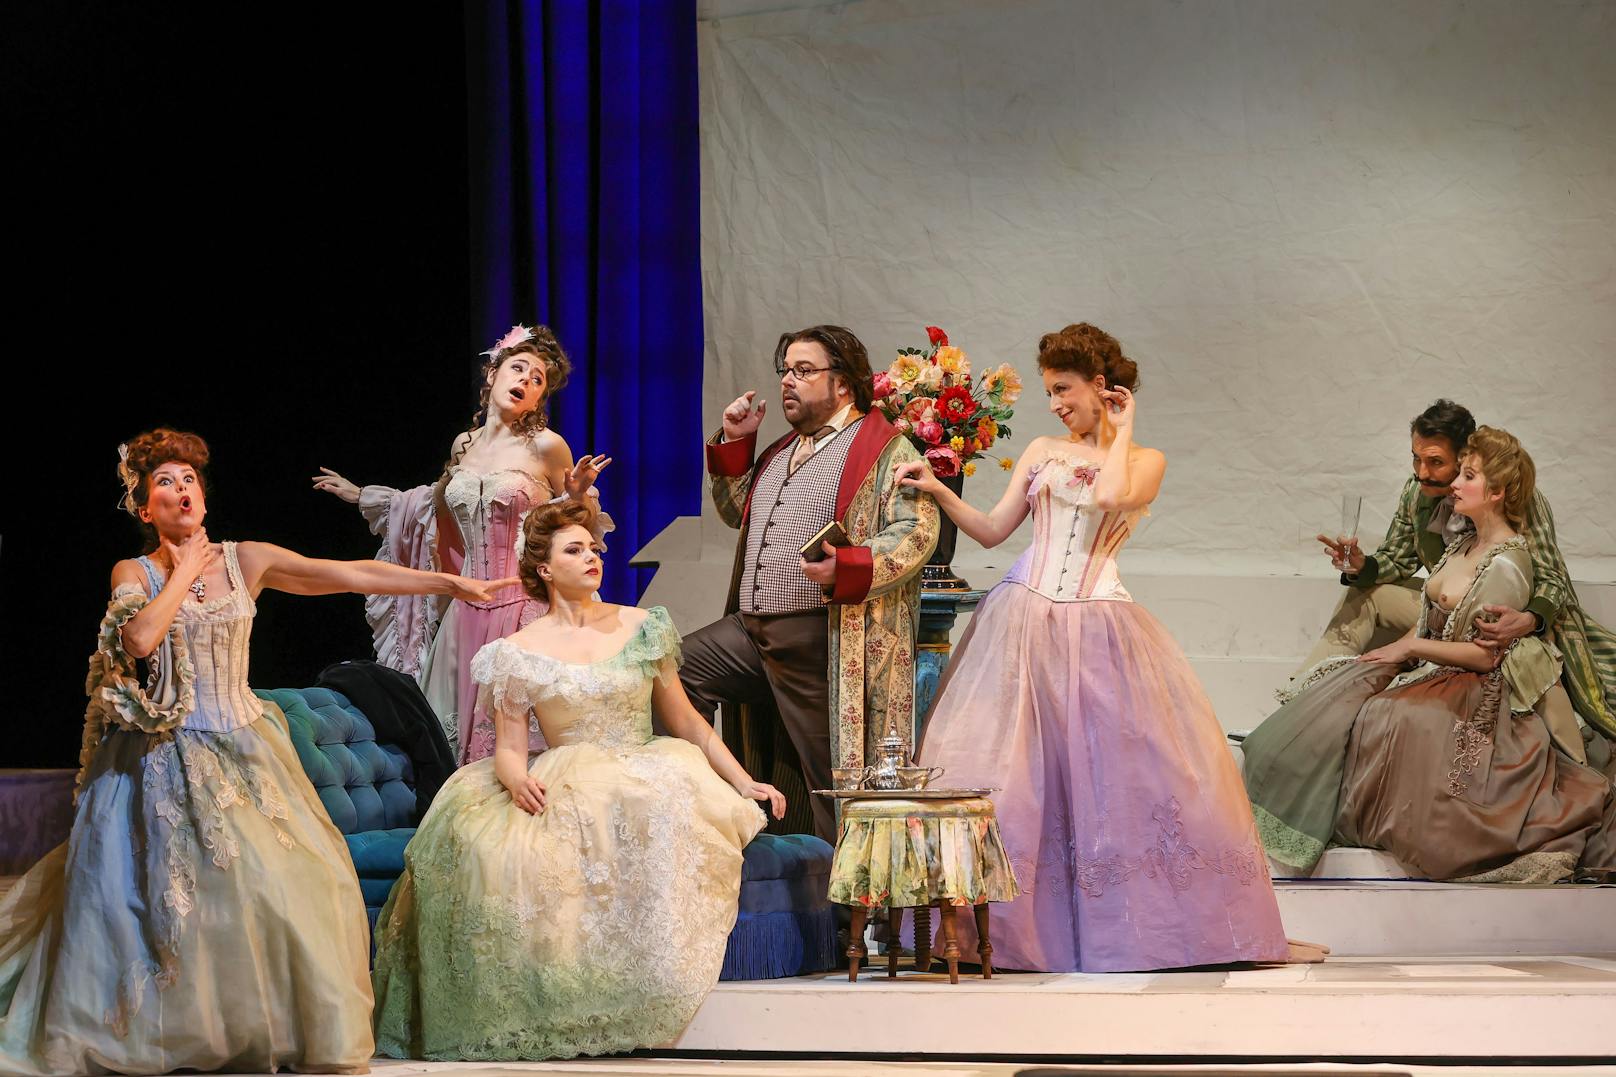 "La rondine" sollte ursprünglich eine Operette werden, Puccini schrieb dann aber doch wieder eine Oper.